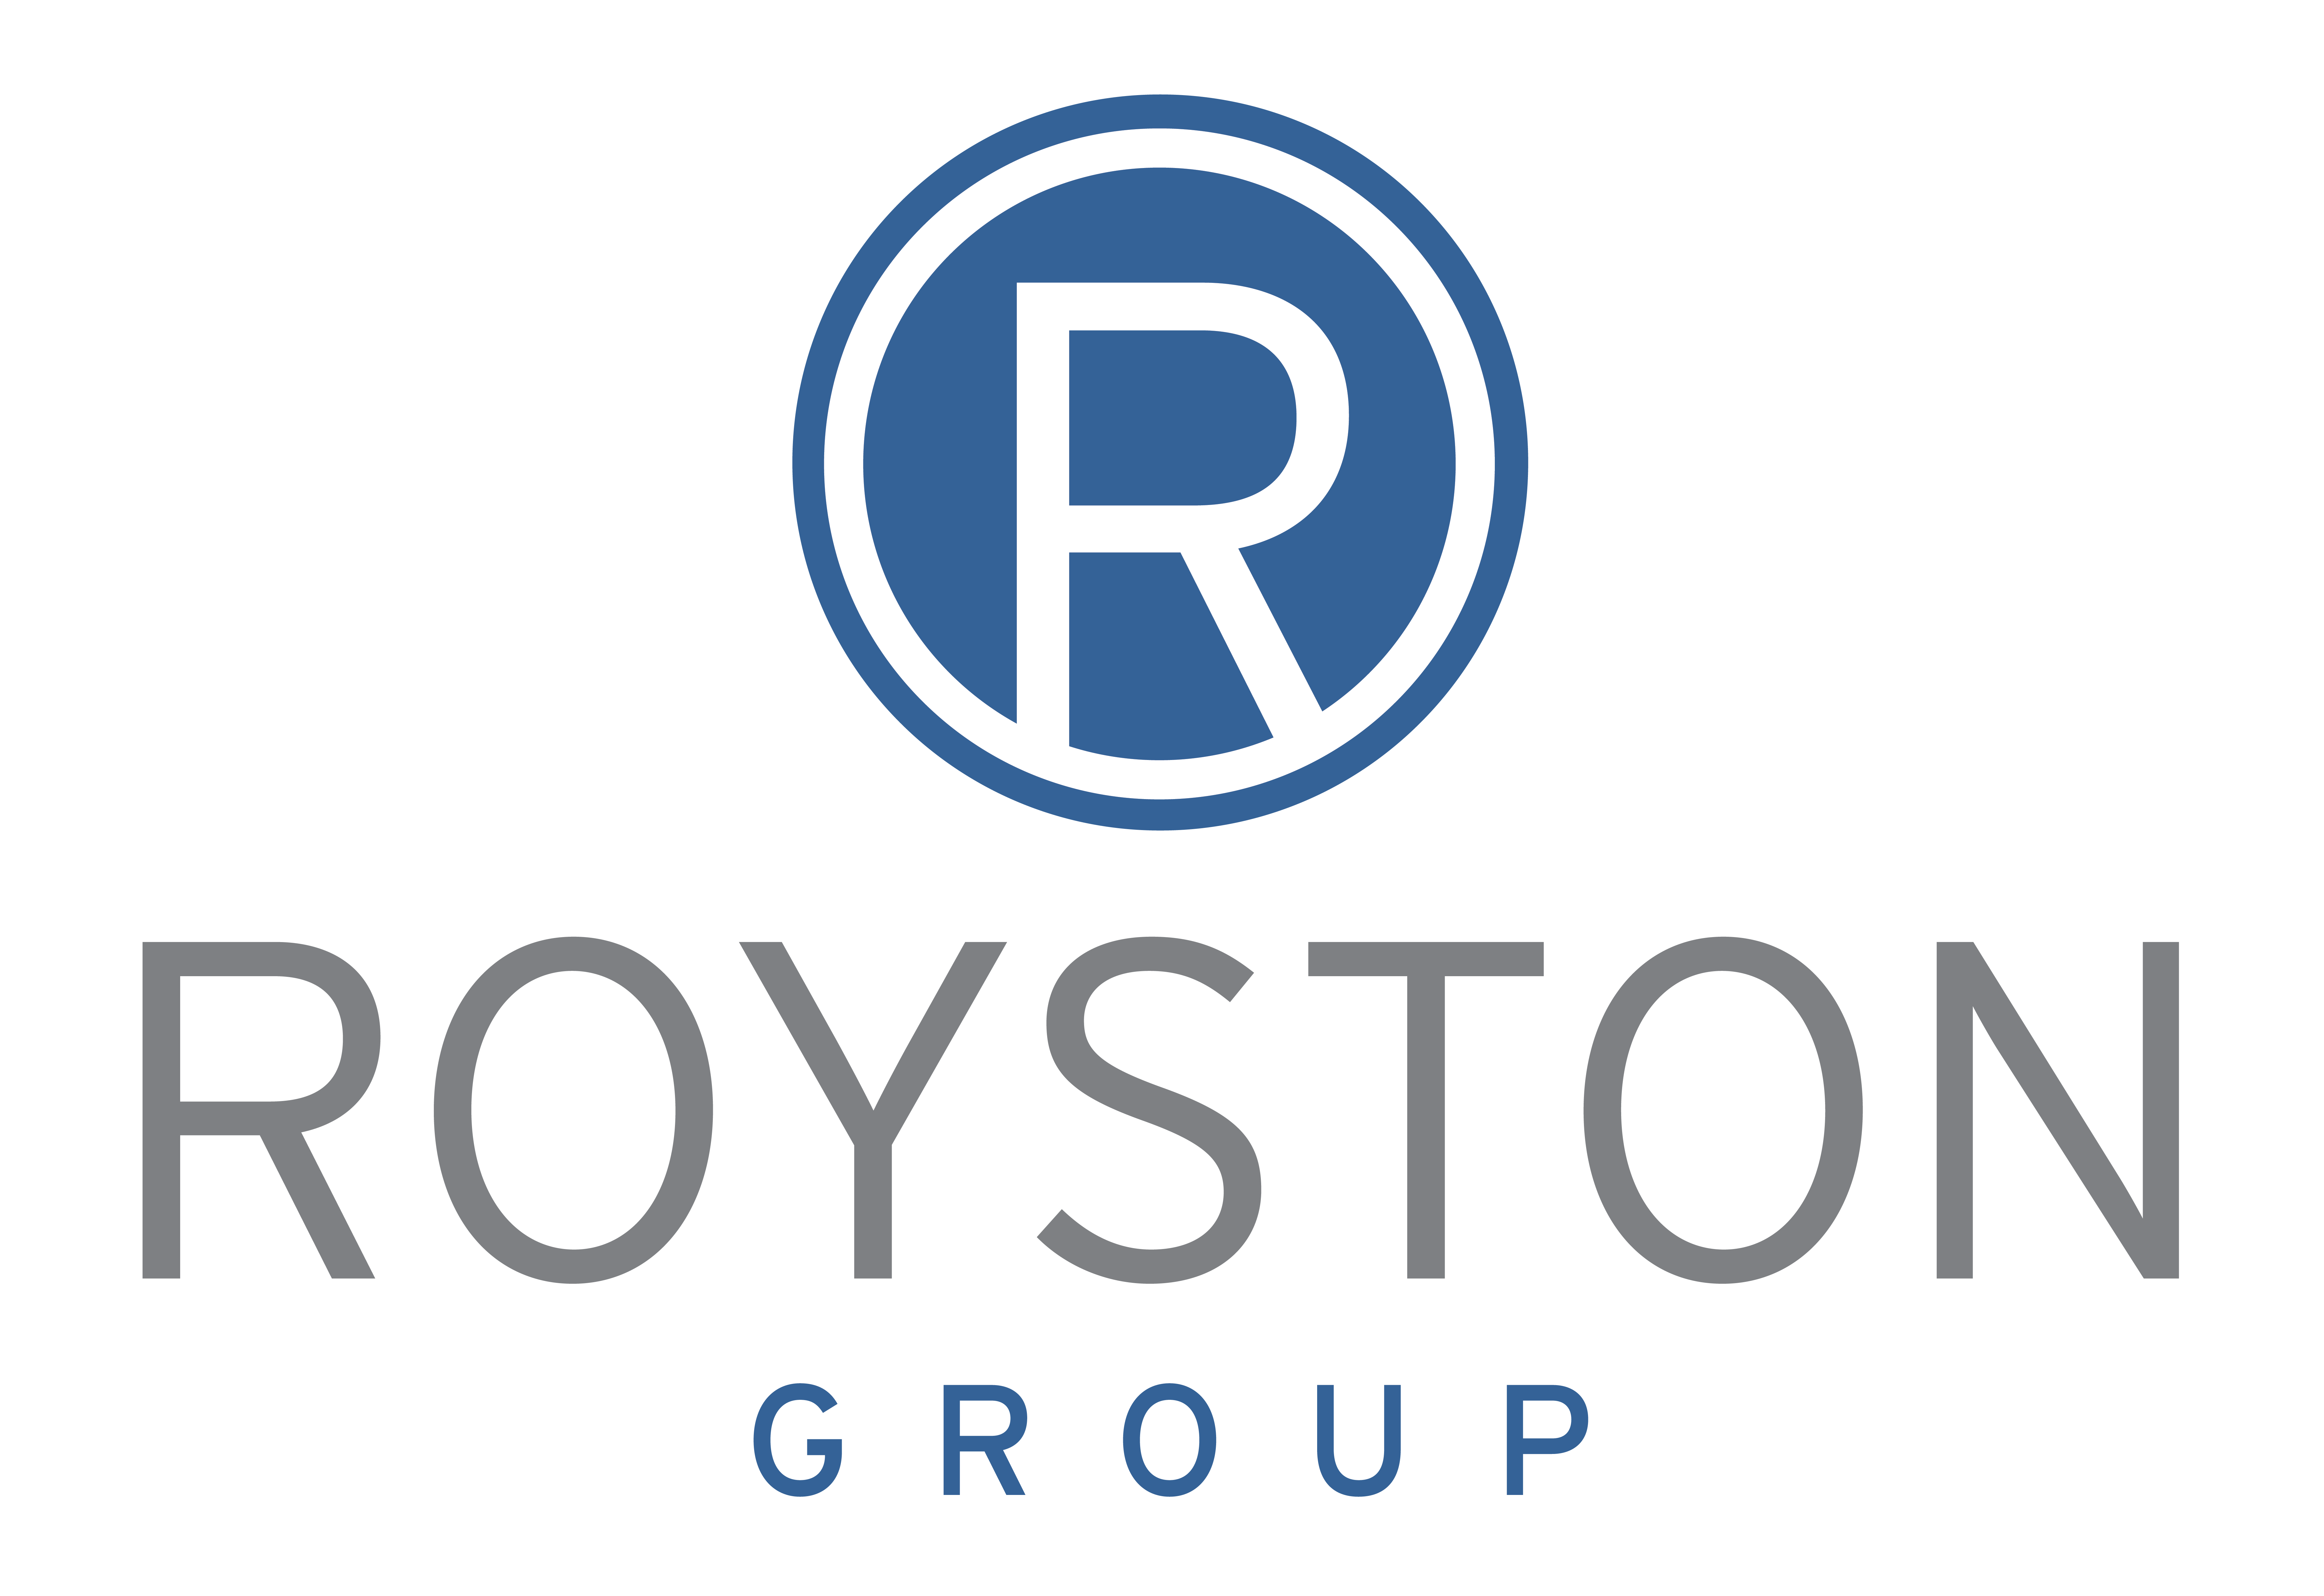 Royston Group logo